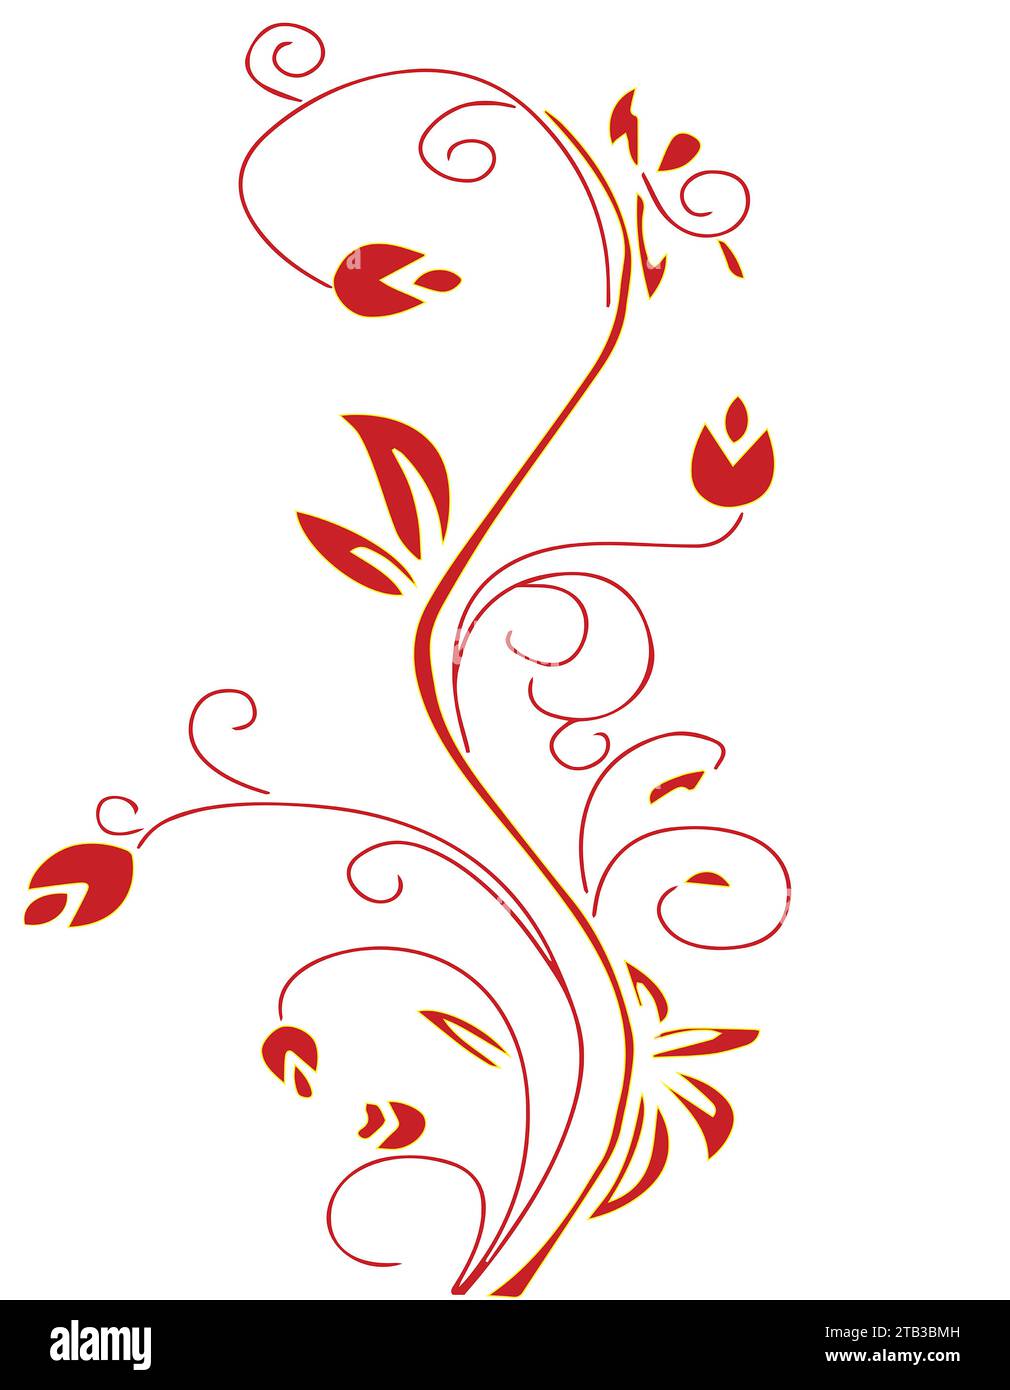 Fiori rossi e foglie rosse su uno stelo rosso. Il motivo floreale è su sfondo bianco Foto Stock